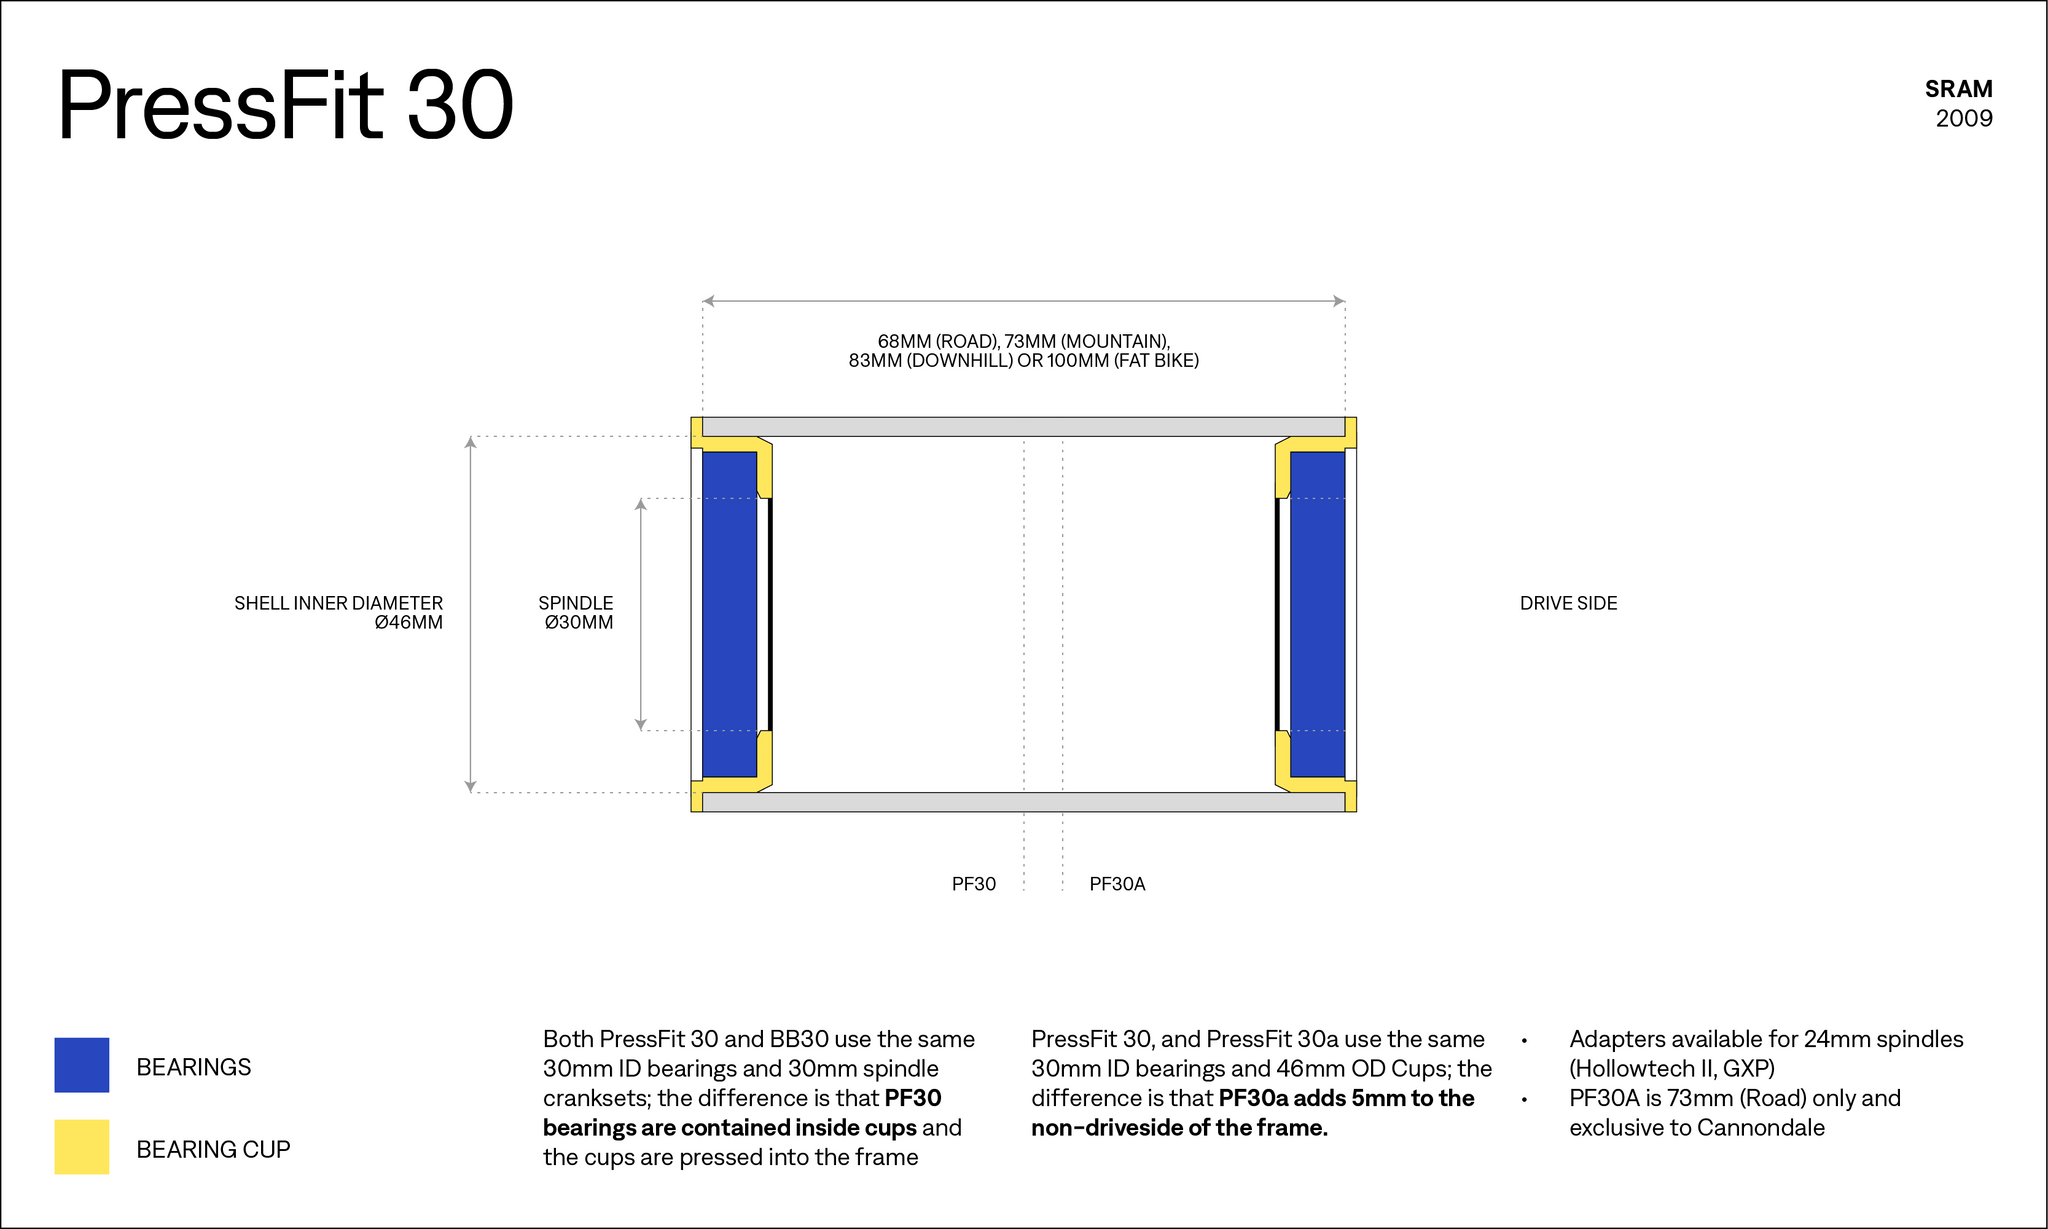 PF30 Bottom Bracket Diagram